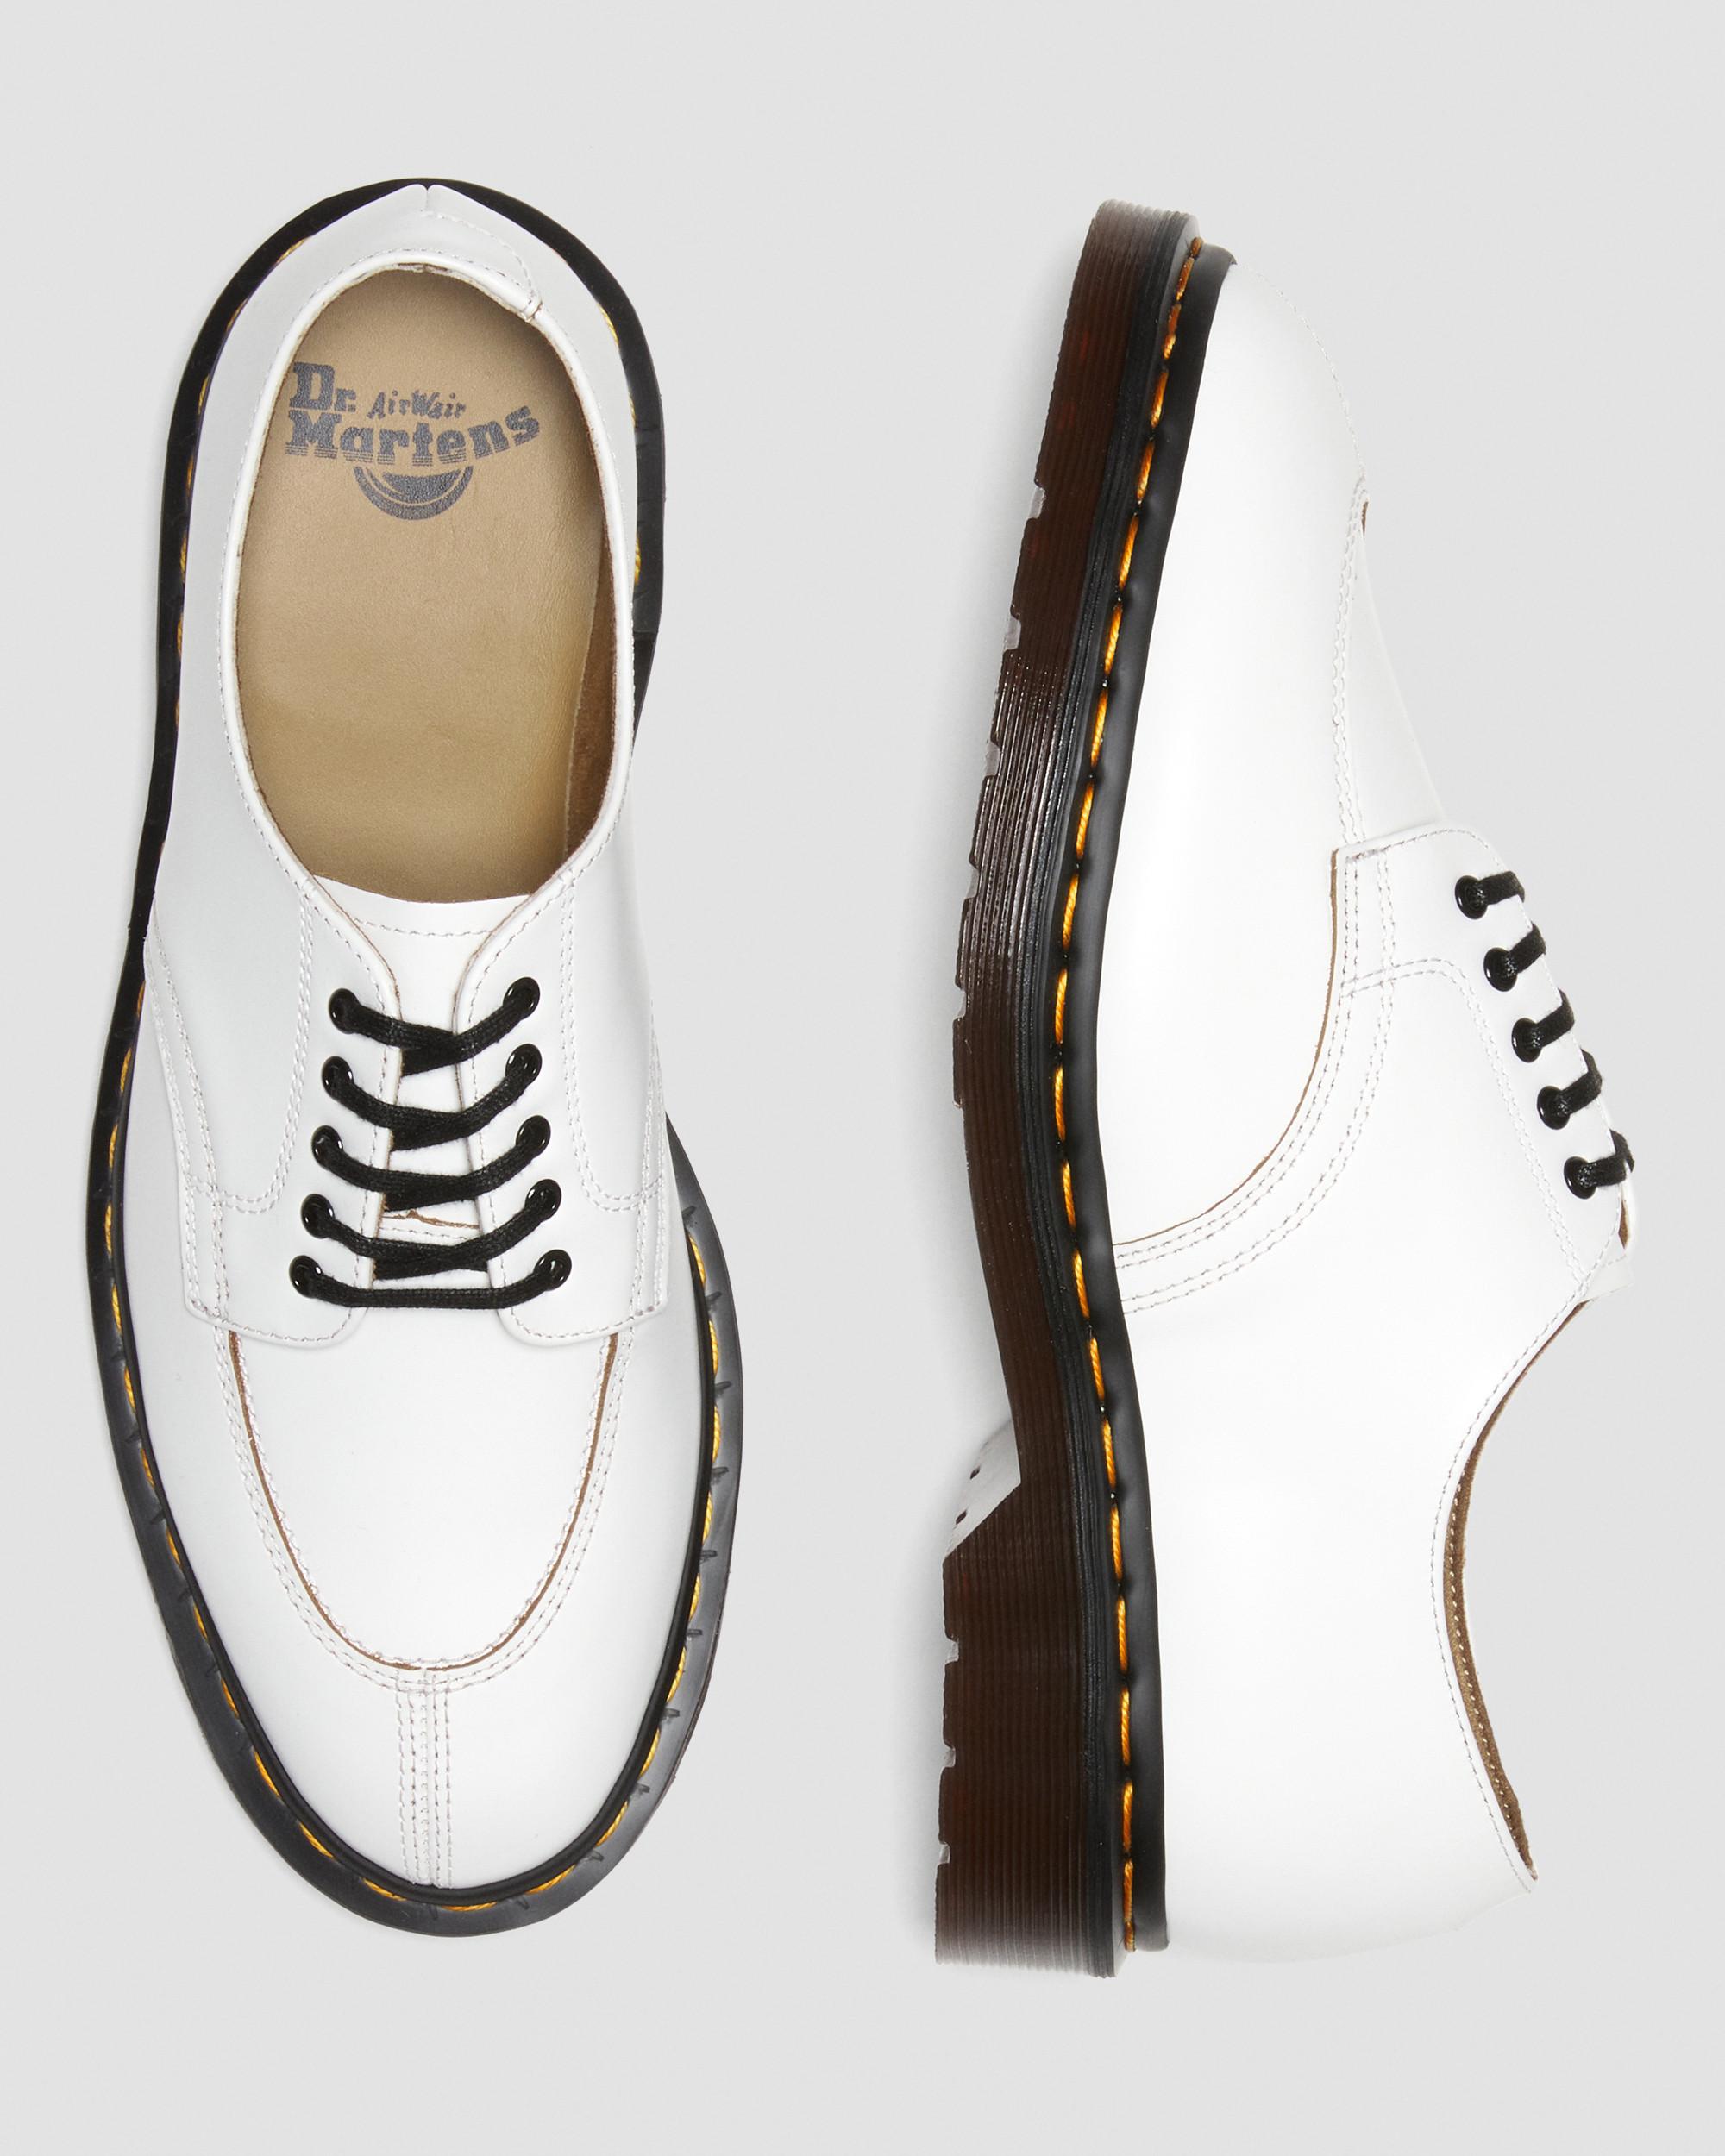 2046 Vintage Smooth Leather Oxford Shoes2046 Vintage Glattlederschuhe Dr. Martens